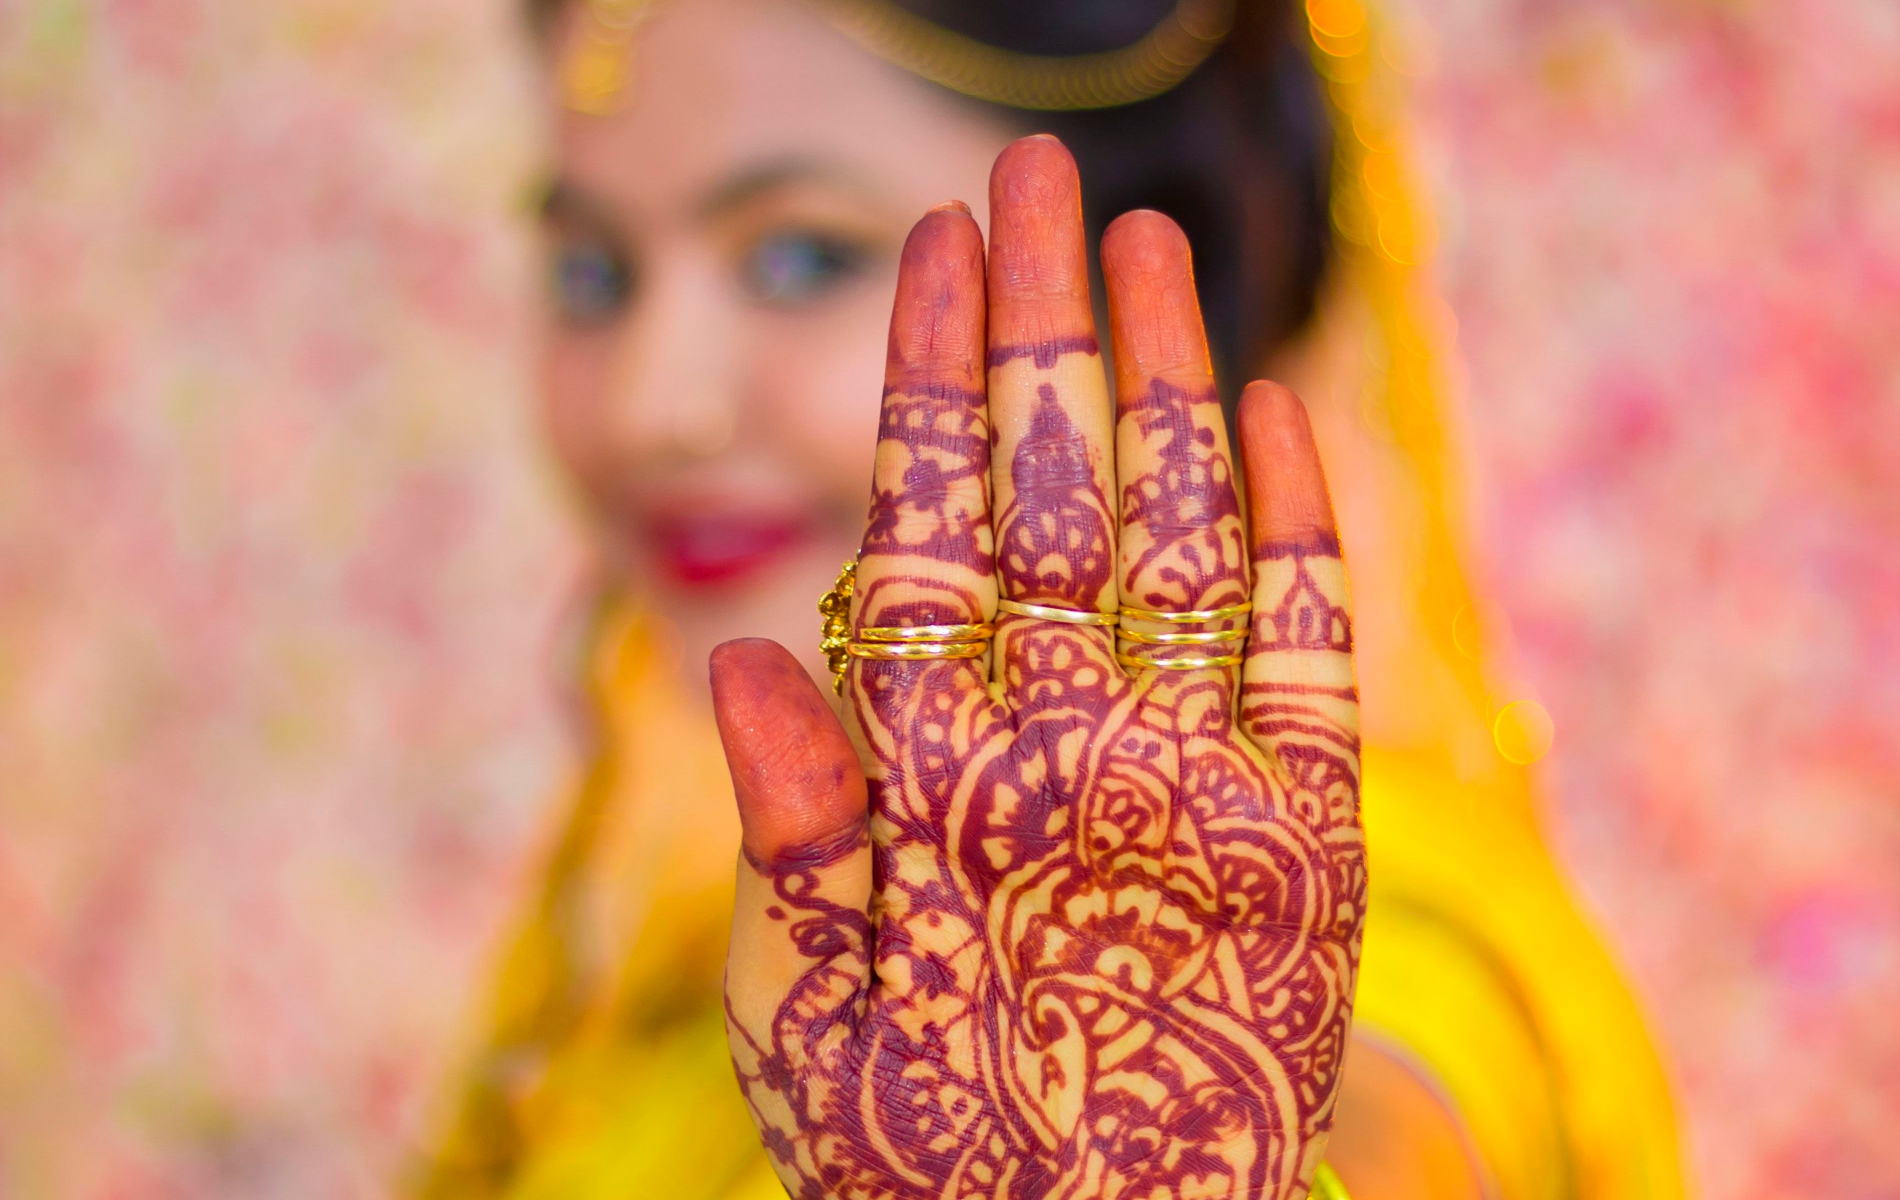 Bride Wedding Photography Assamese , HD Wallpaper & Backgrounds